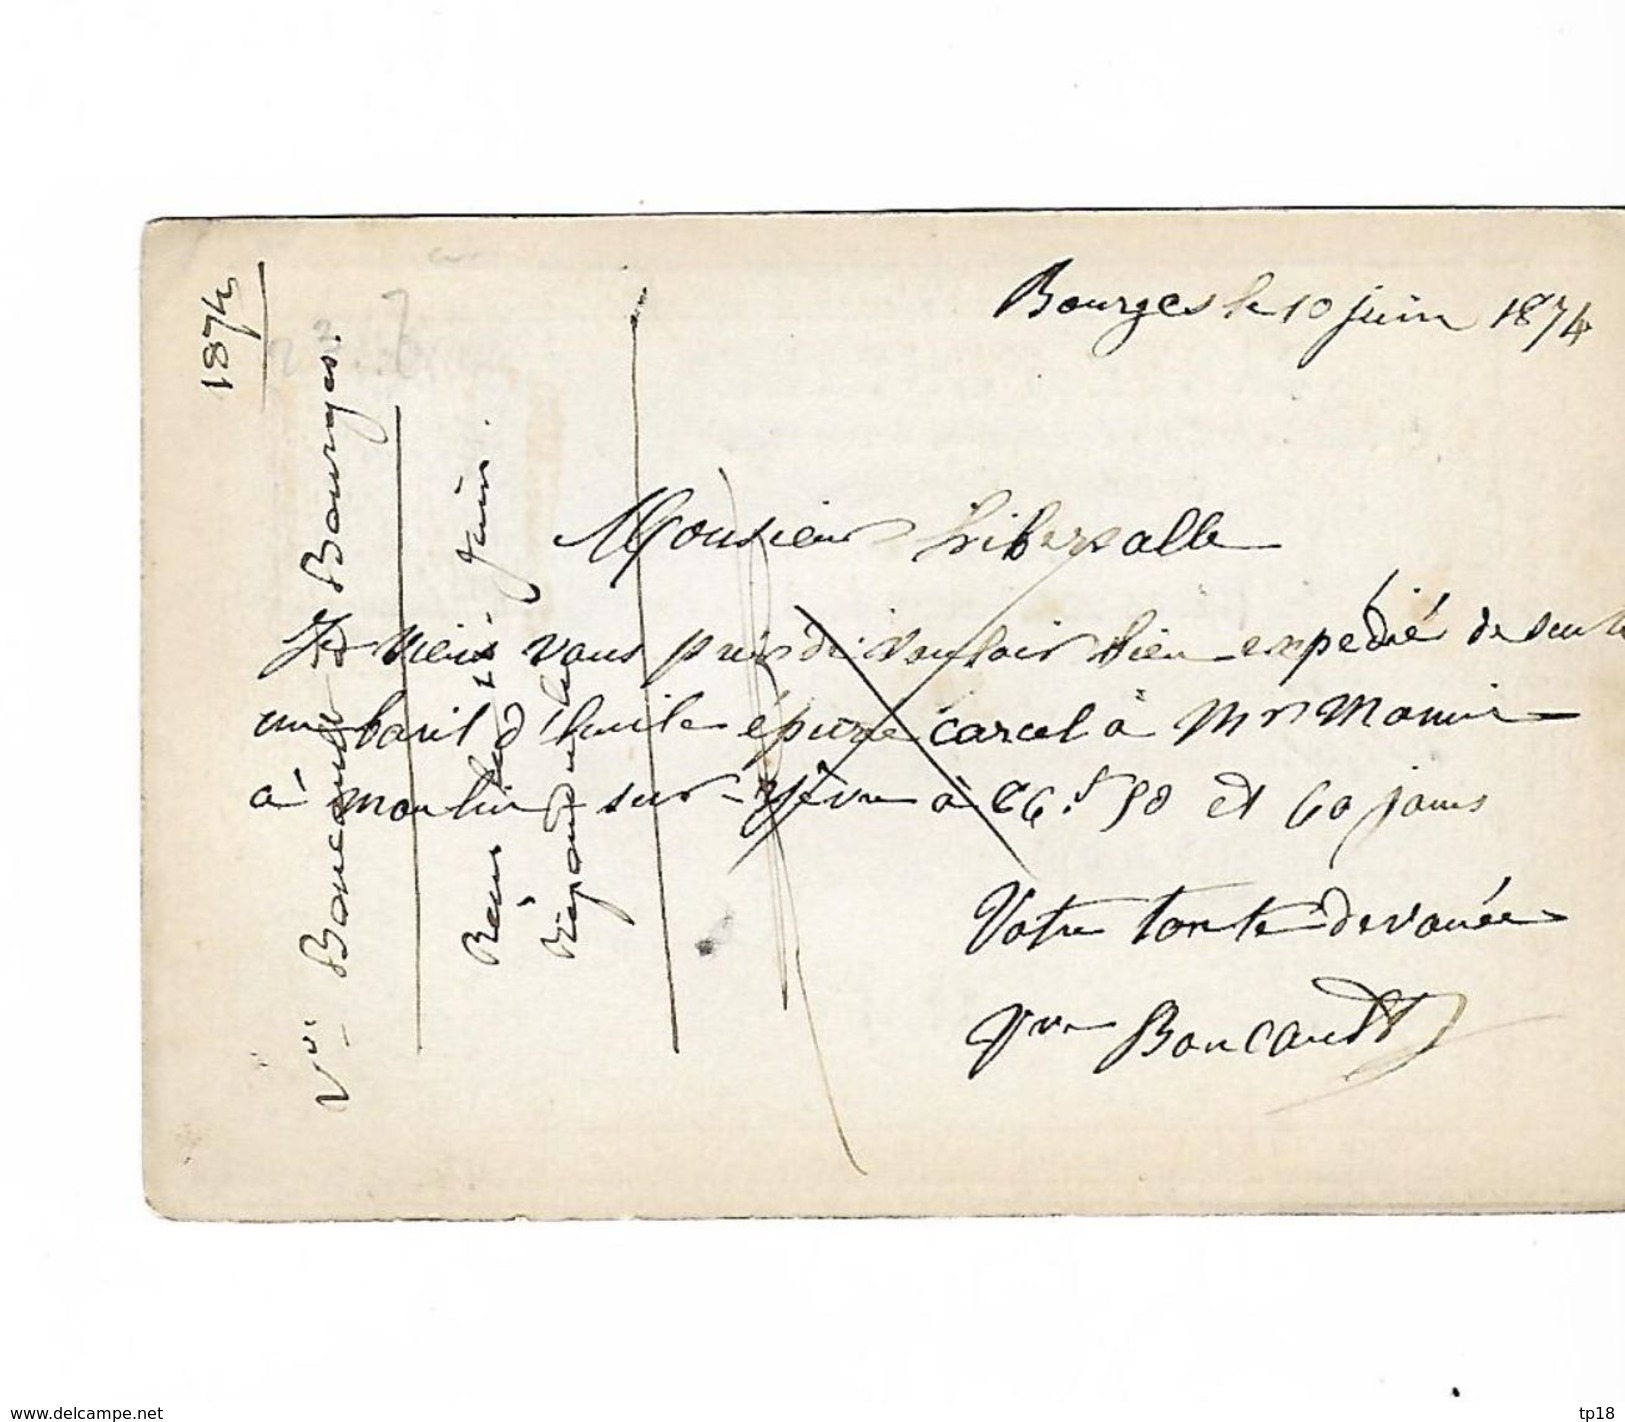 Cartes Postale De Bourges A Paris 1874  Destinée A Circuler En France Et En Algérie Gros Numéro 574 - Cartes Précurseurs